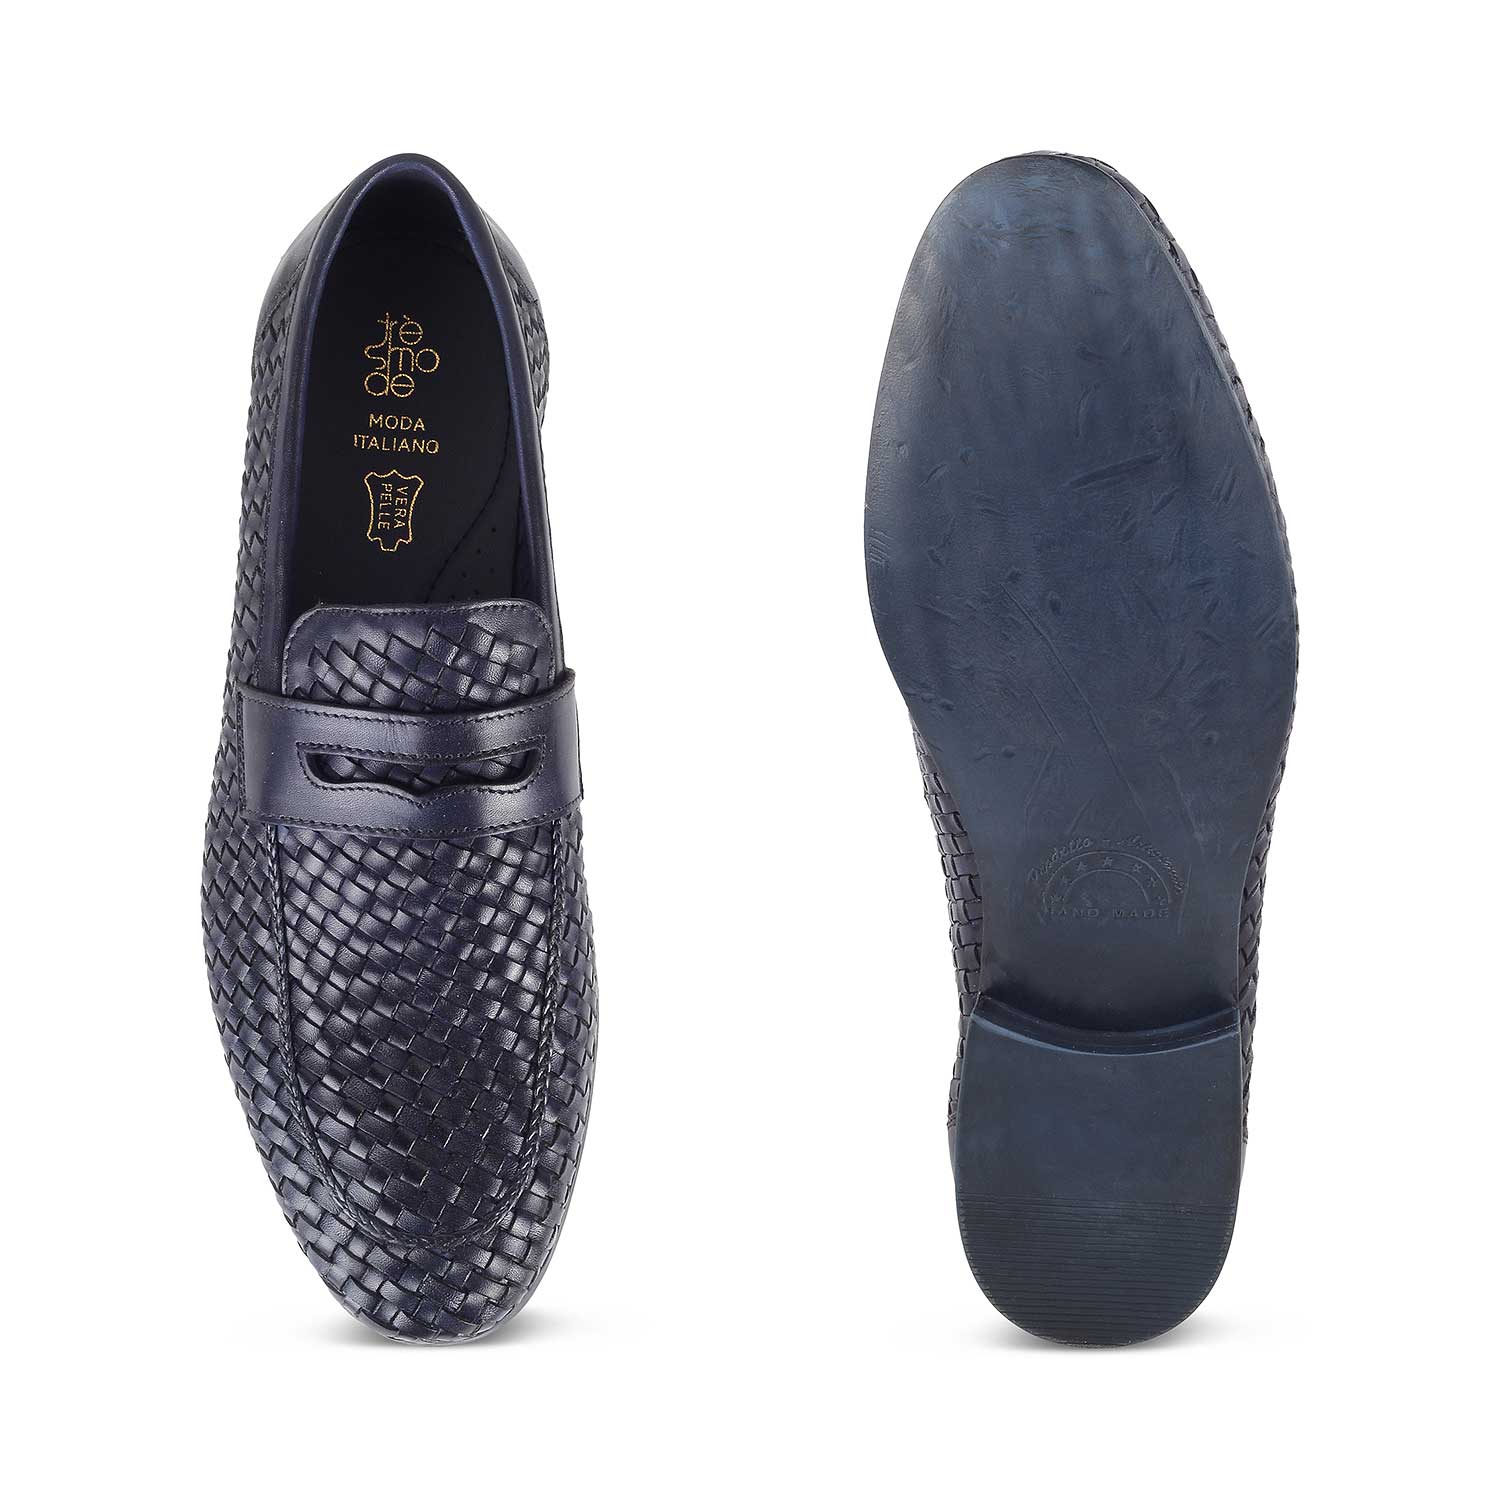 Nokiv Blue Men's Leather Loafers Online at Tresmode.com